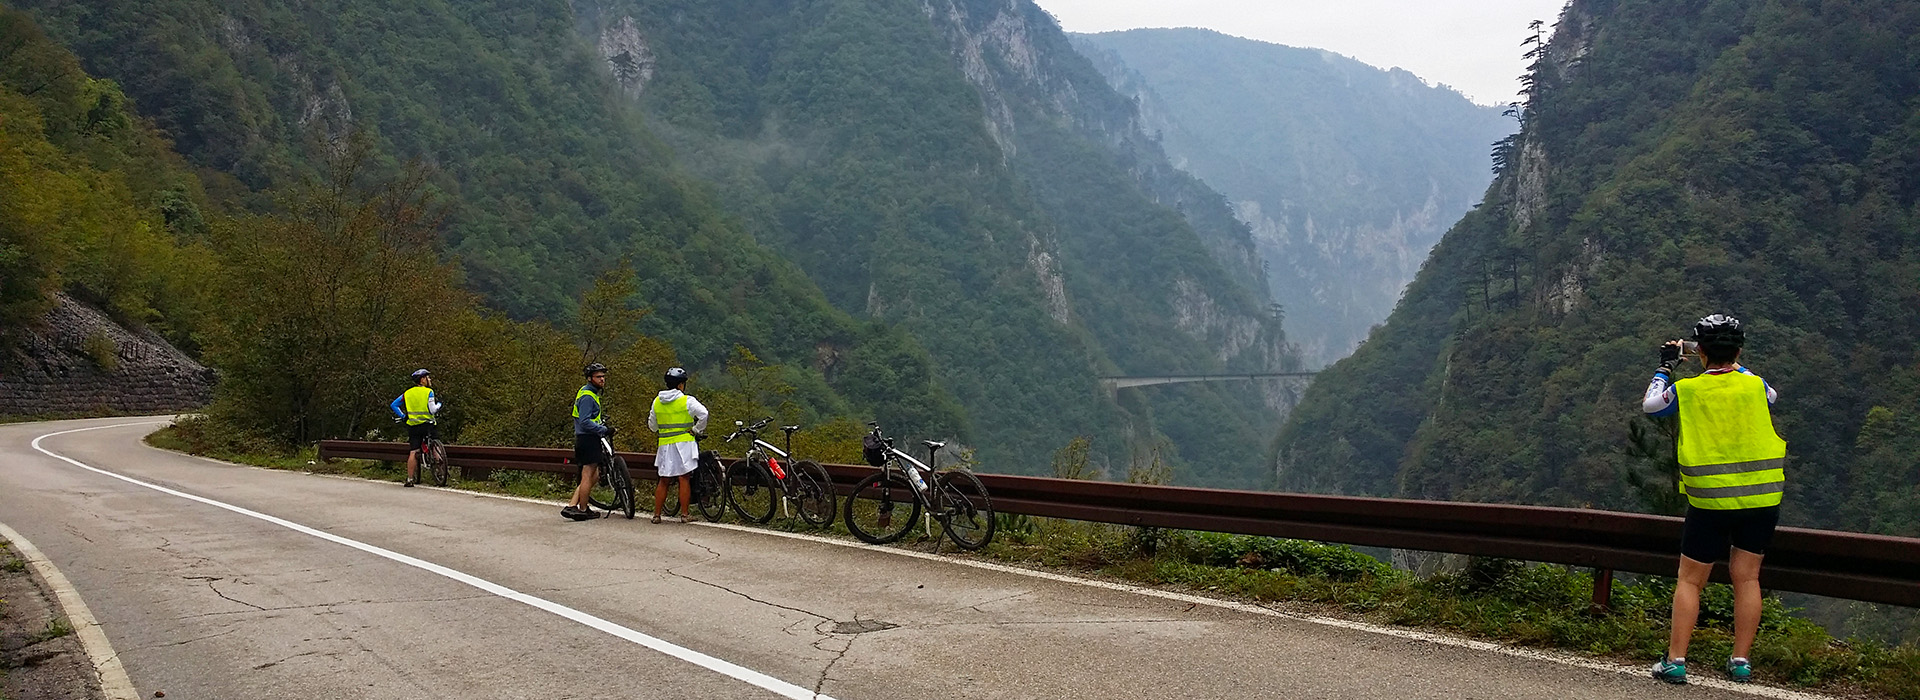 Cycling Balkans guided holiday - Piva canyon